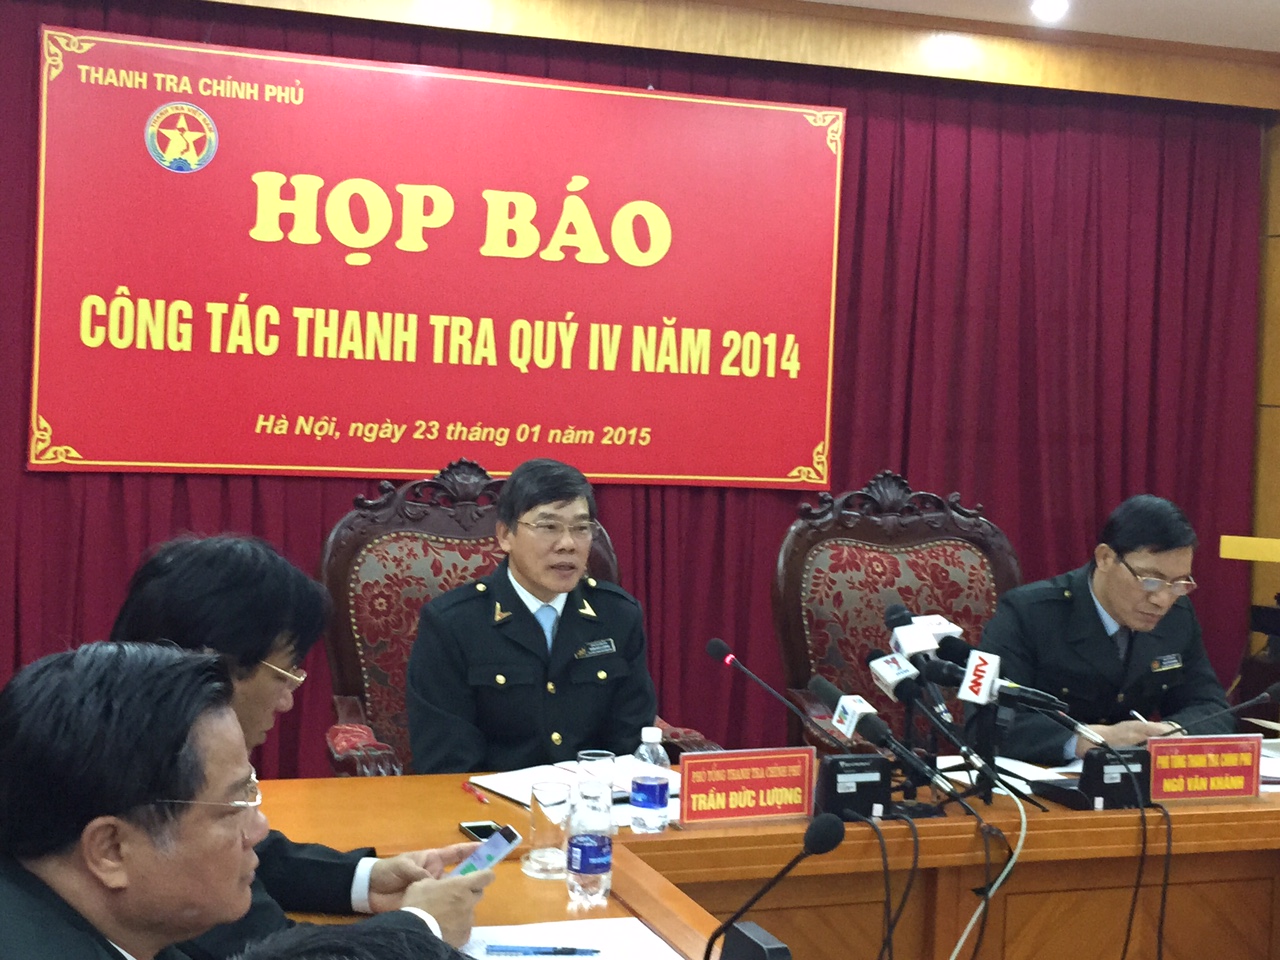 Thanh tra Chính phủ lý giải việc chậm công bố kết luận sai phạm ở Hà Tĩnh